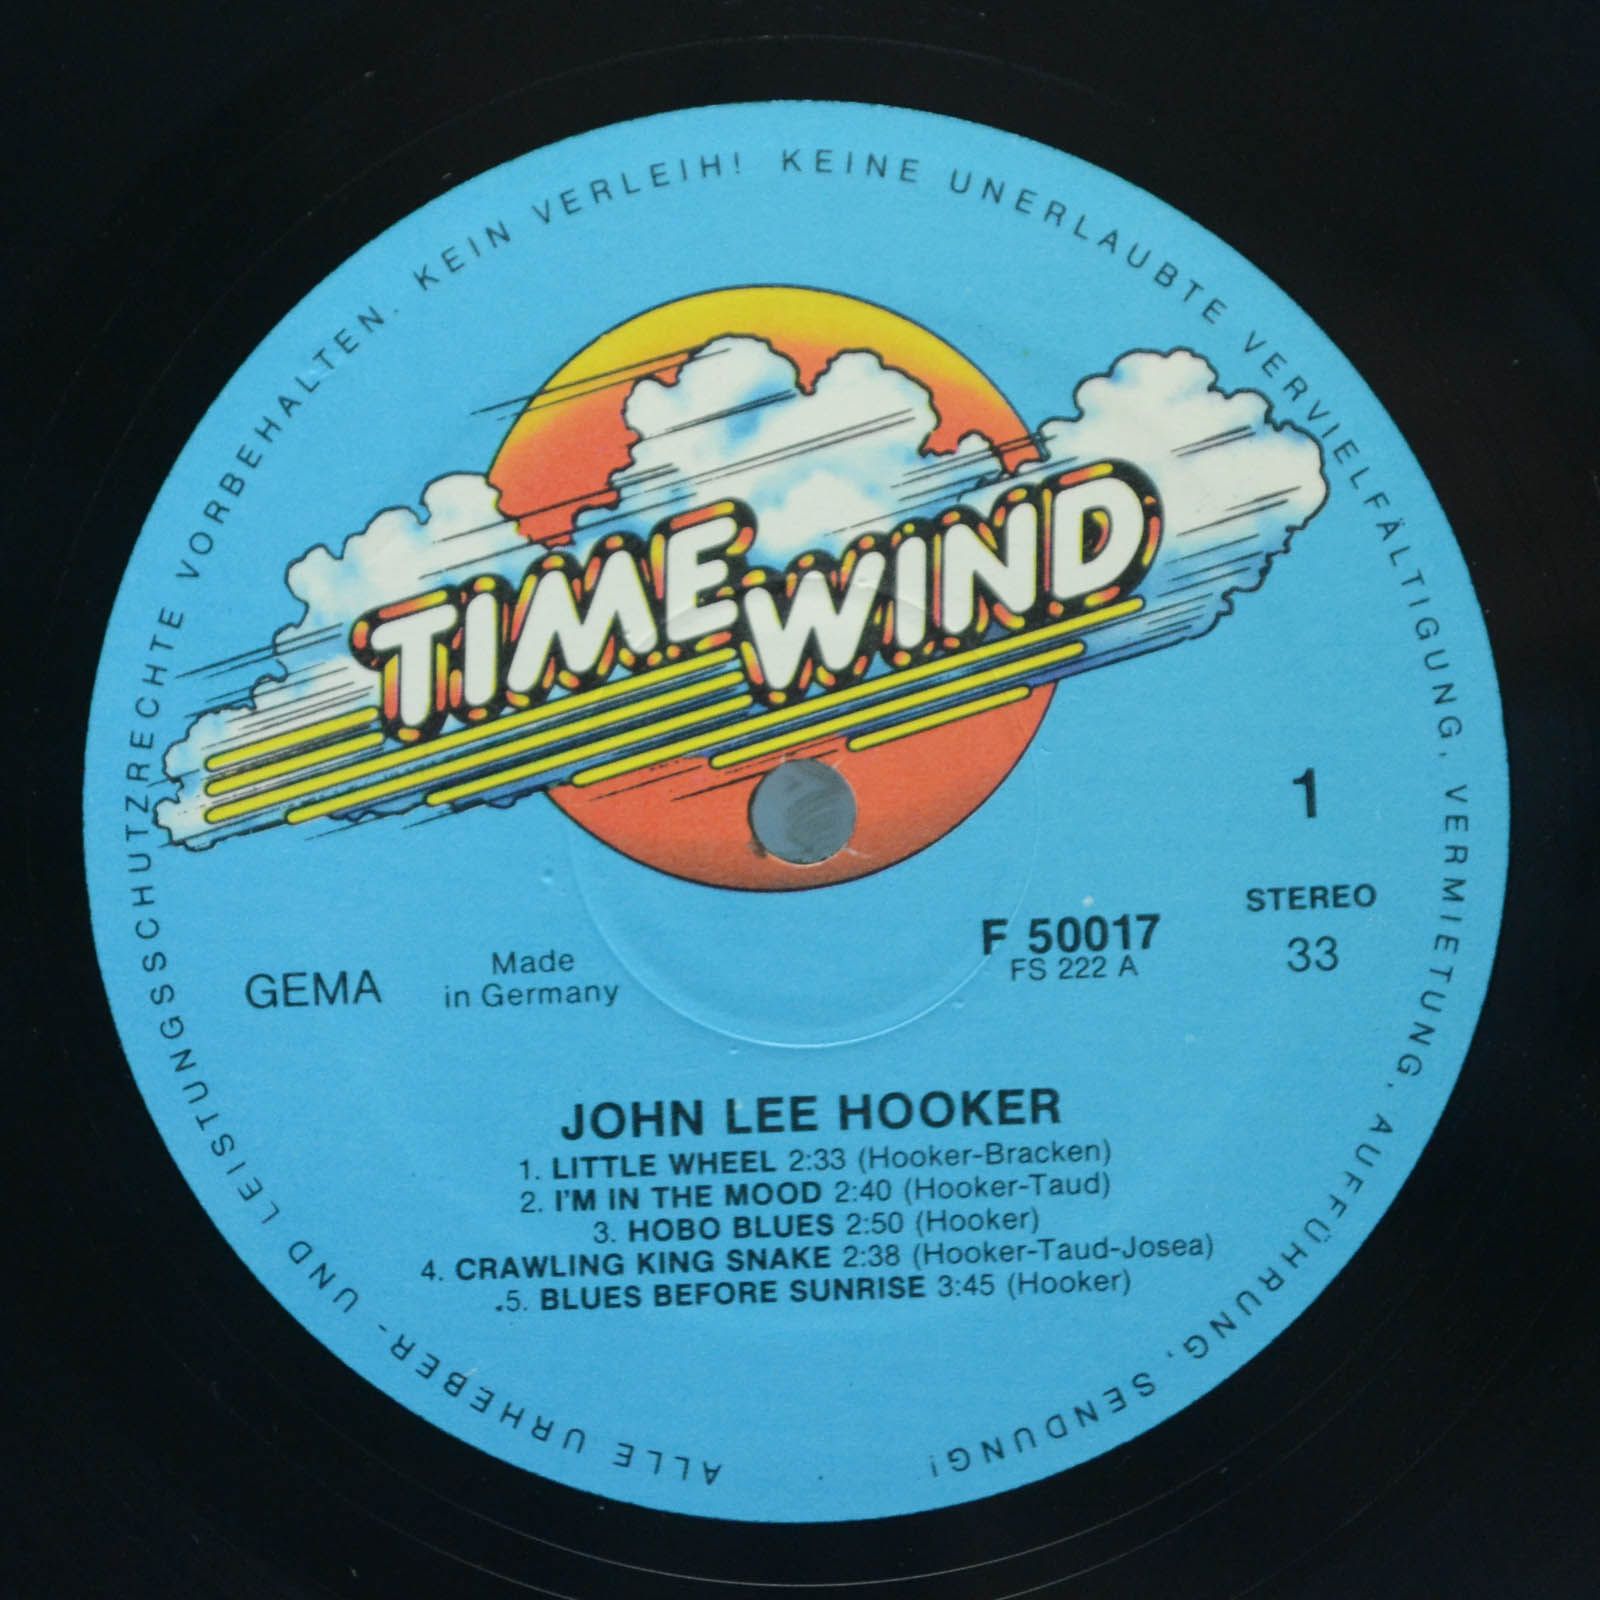 John Lee Hooker — Little Wheel, 1976